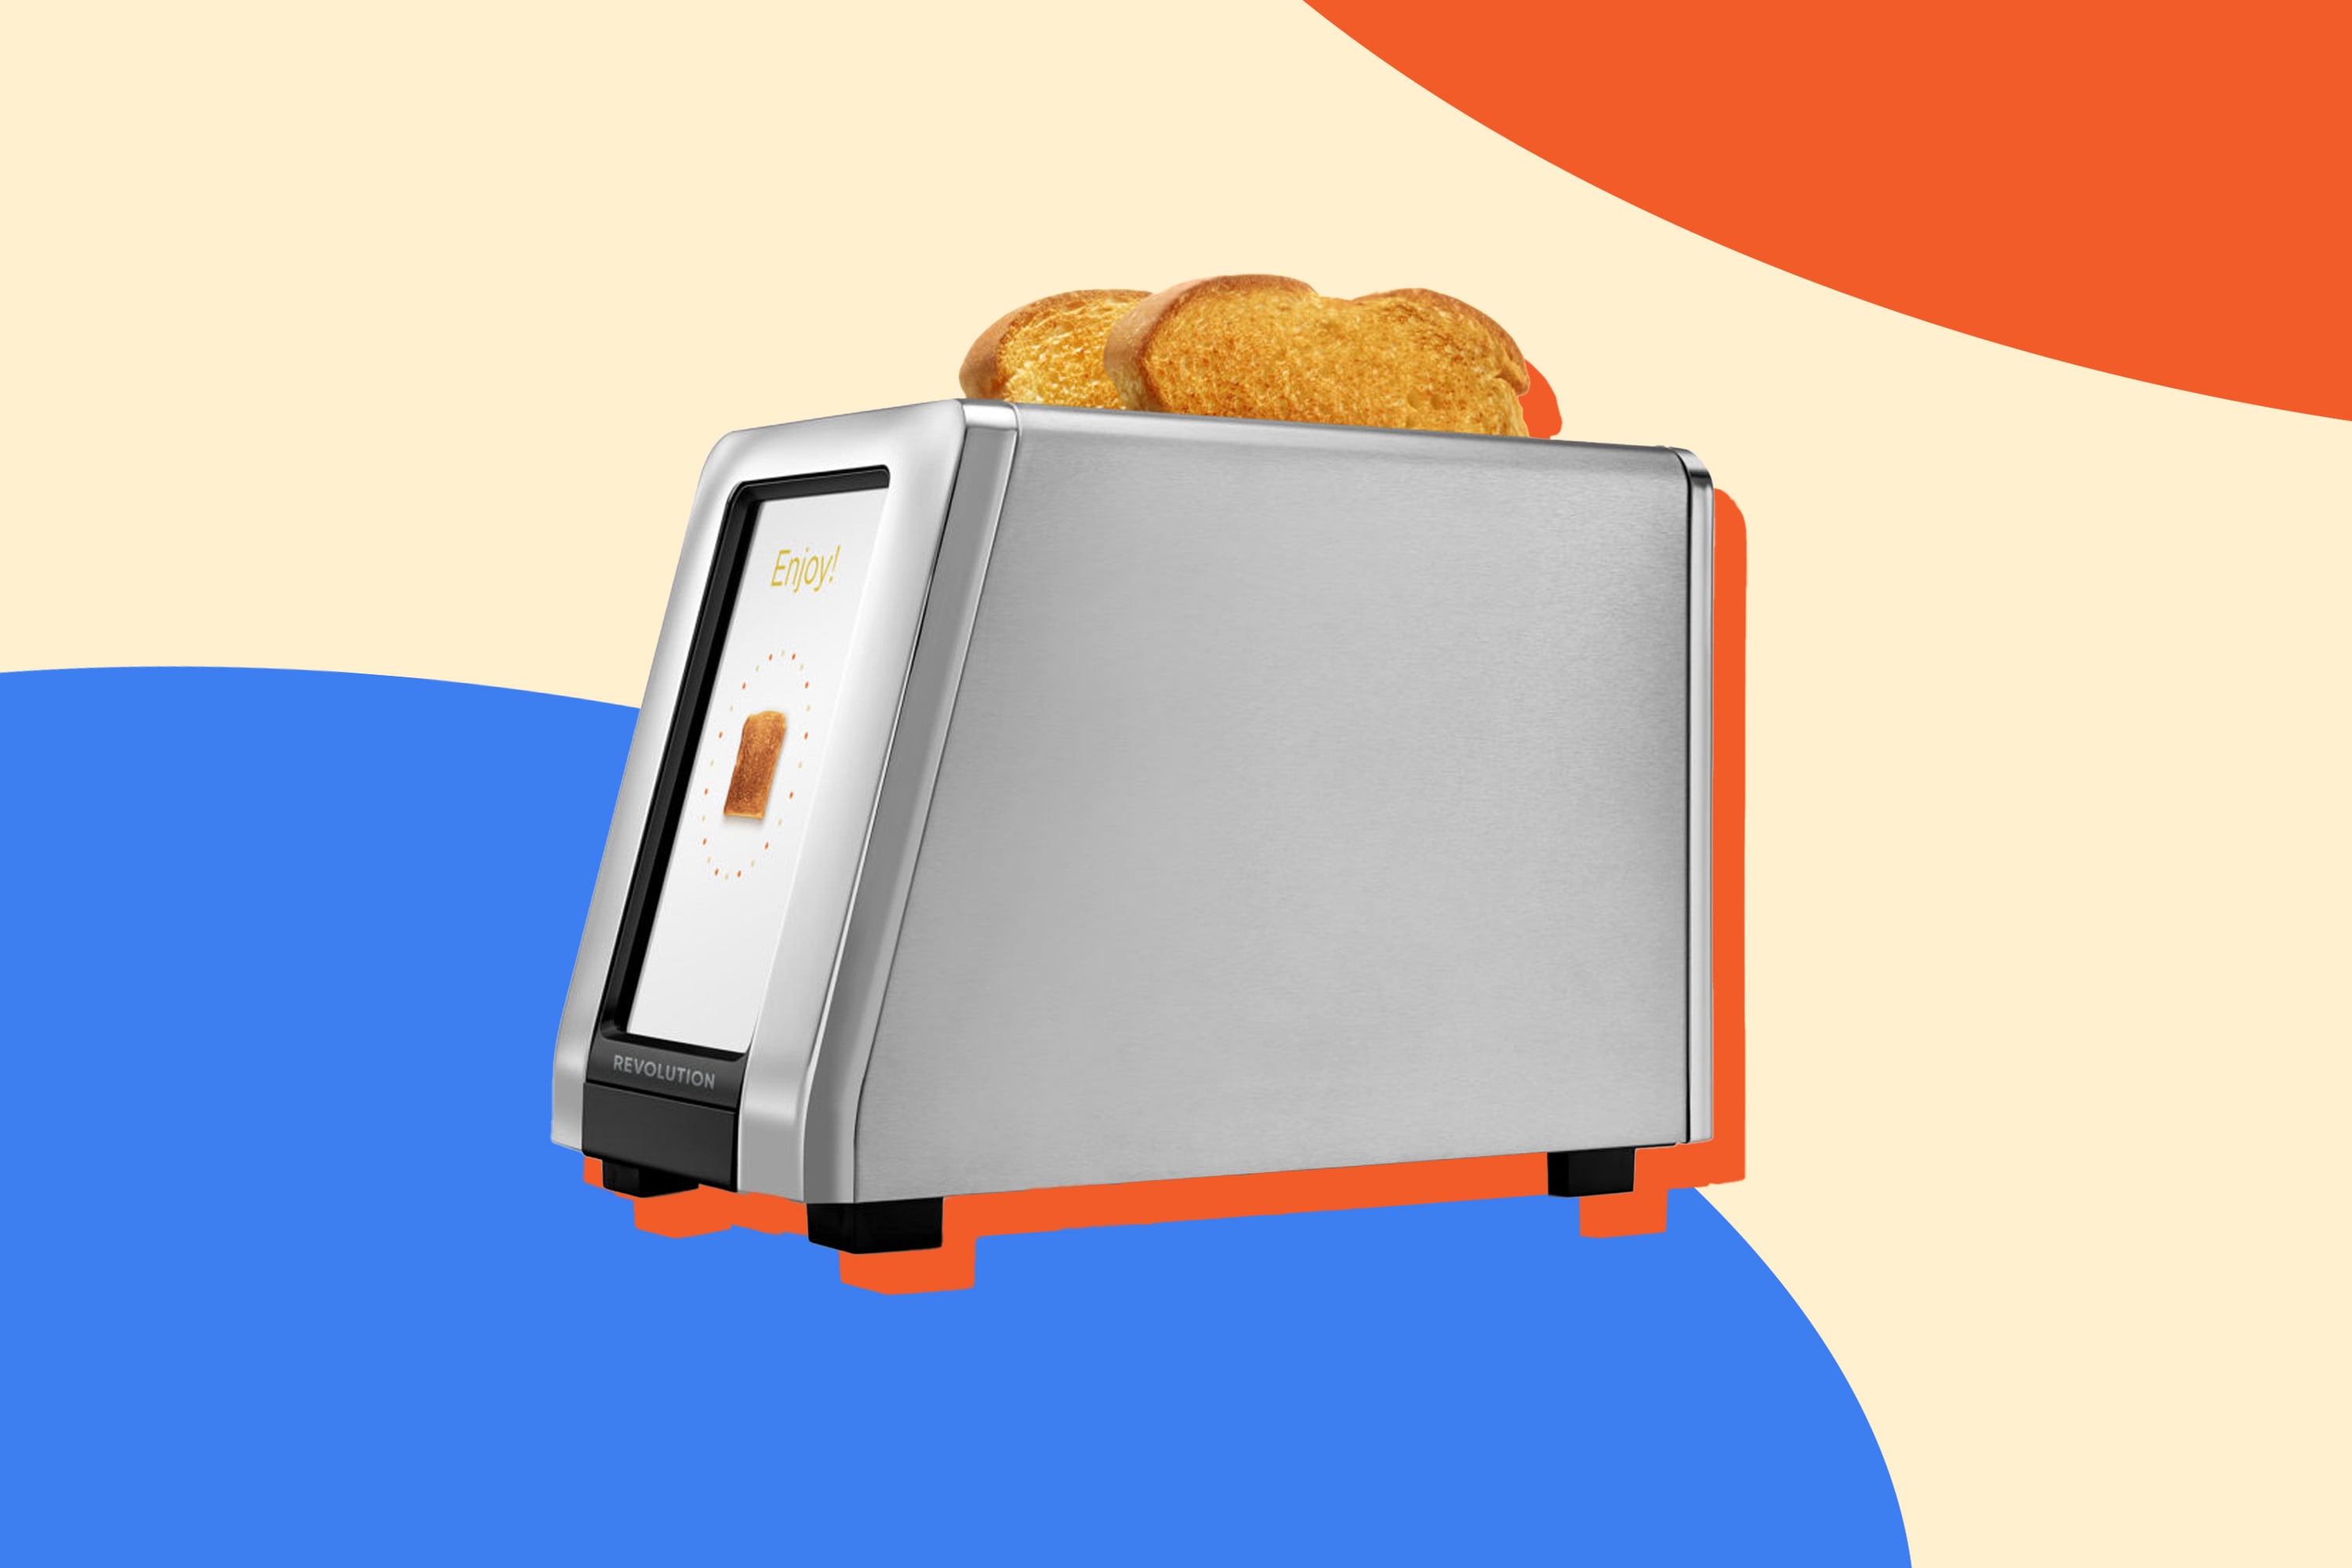 https://cdn.apartmenttherapy.info/image/upload/v1623268907/k/Design/2021-06/toaster-review.jpg